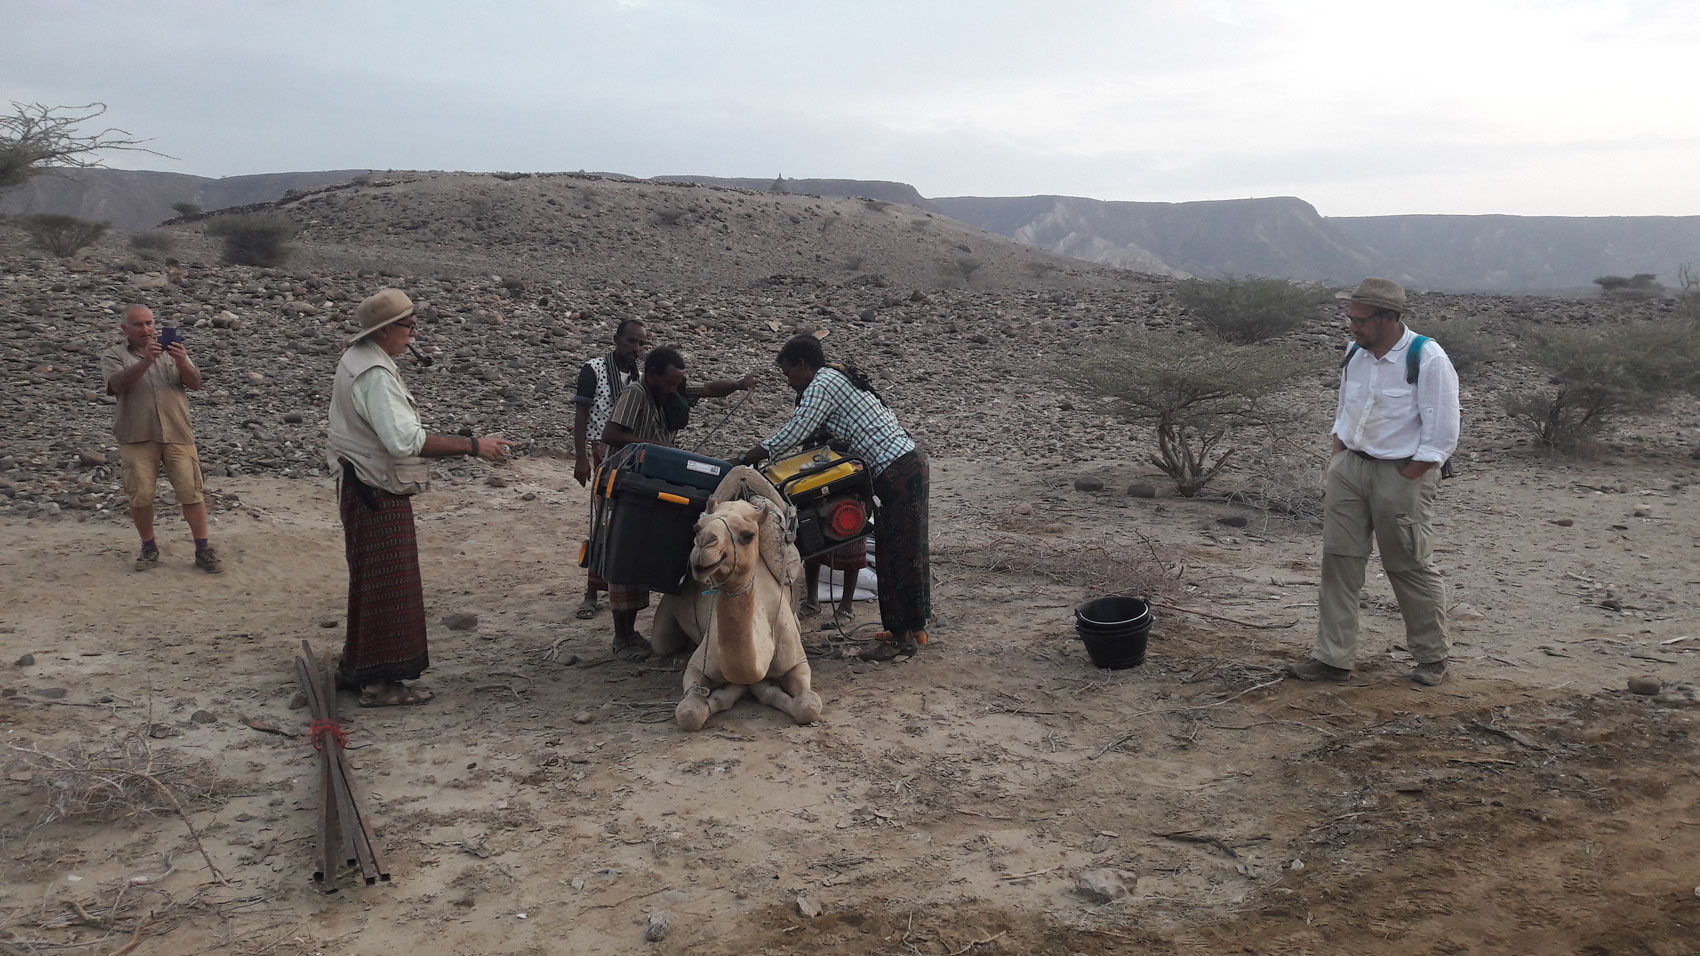  generador eléctrico camello Luba Gadhi 2 